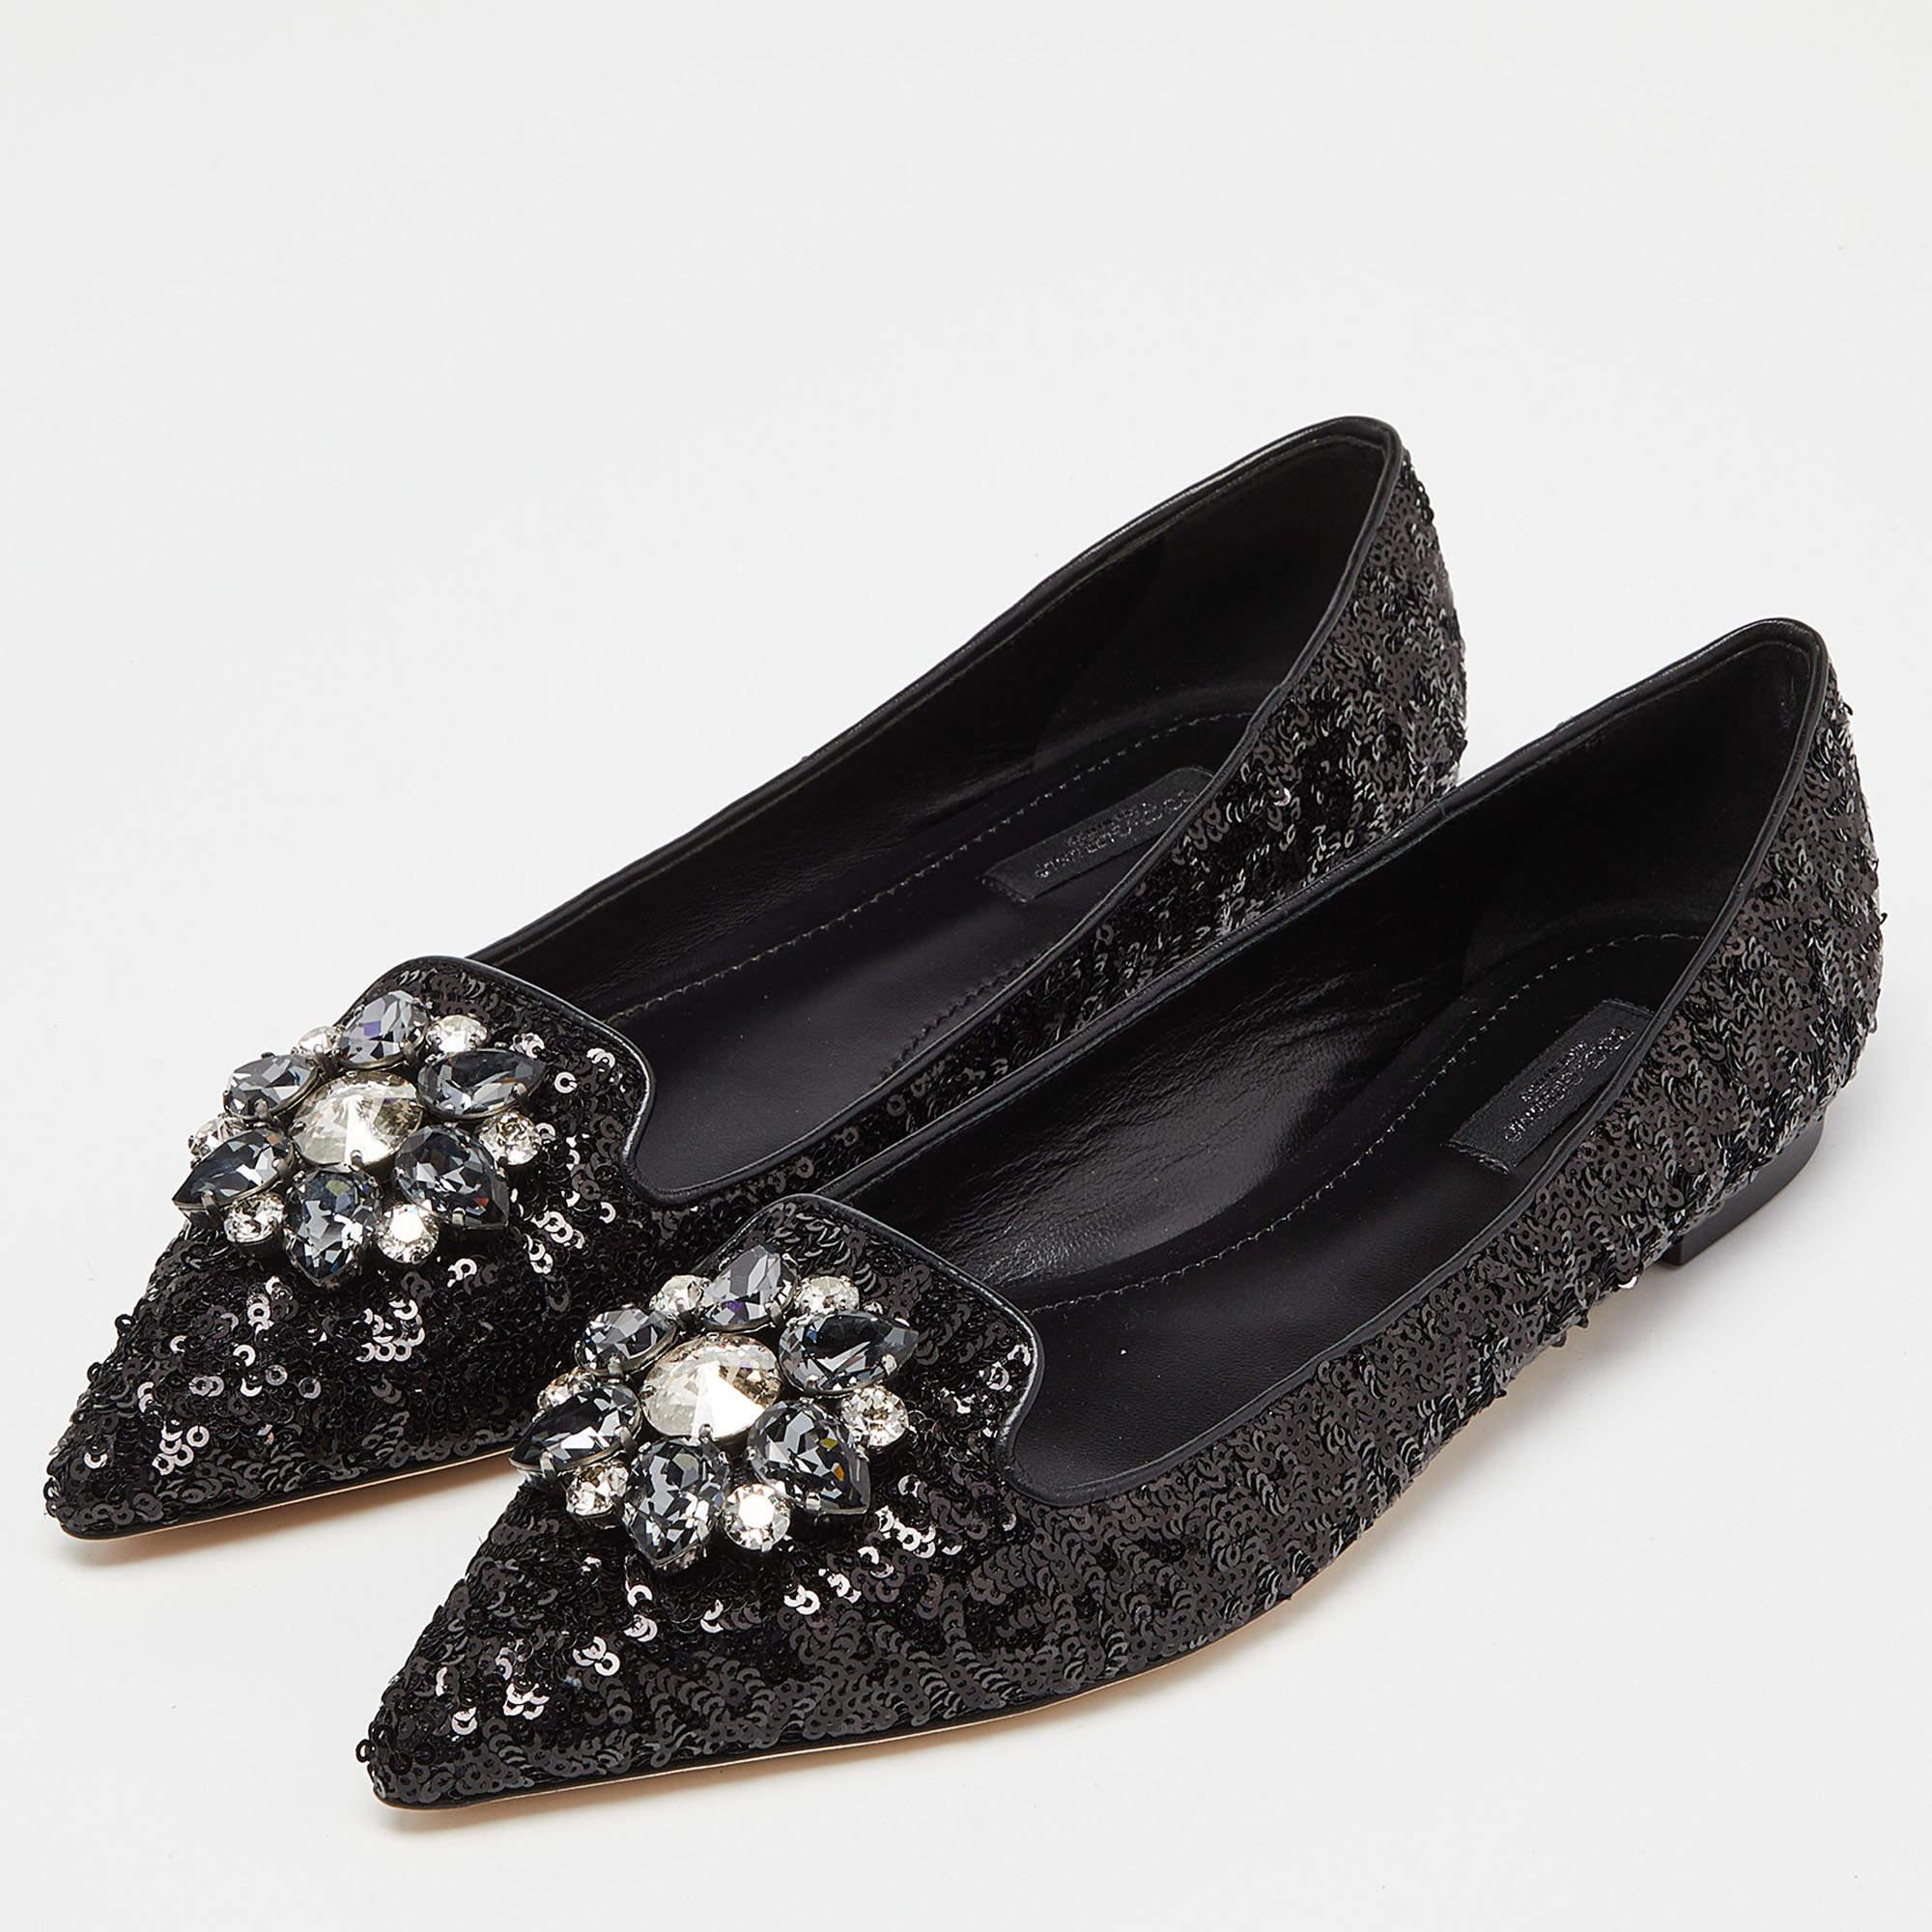 Dolce & Gabbana Black Sequins Crystal Embellished Ballet Flats Size 38.5 5